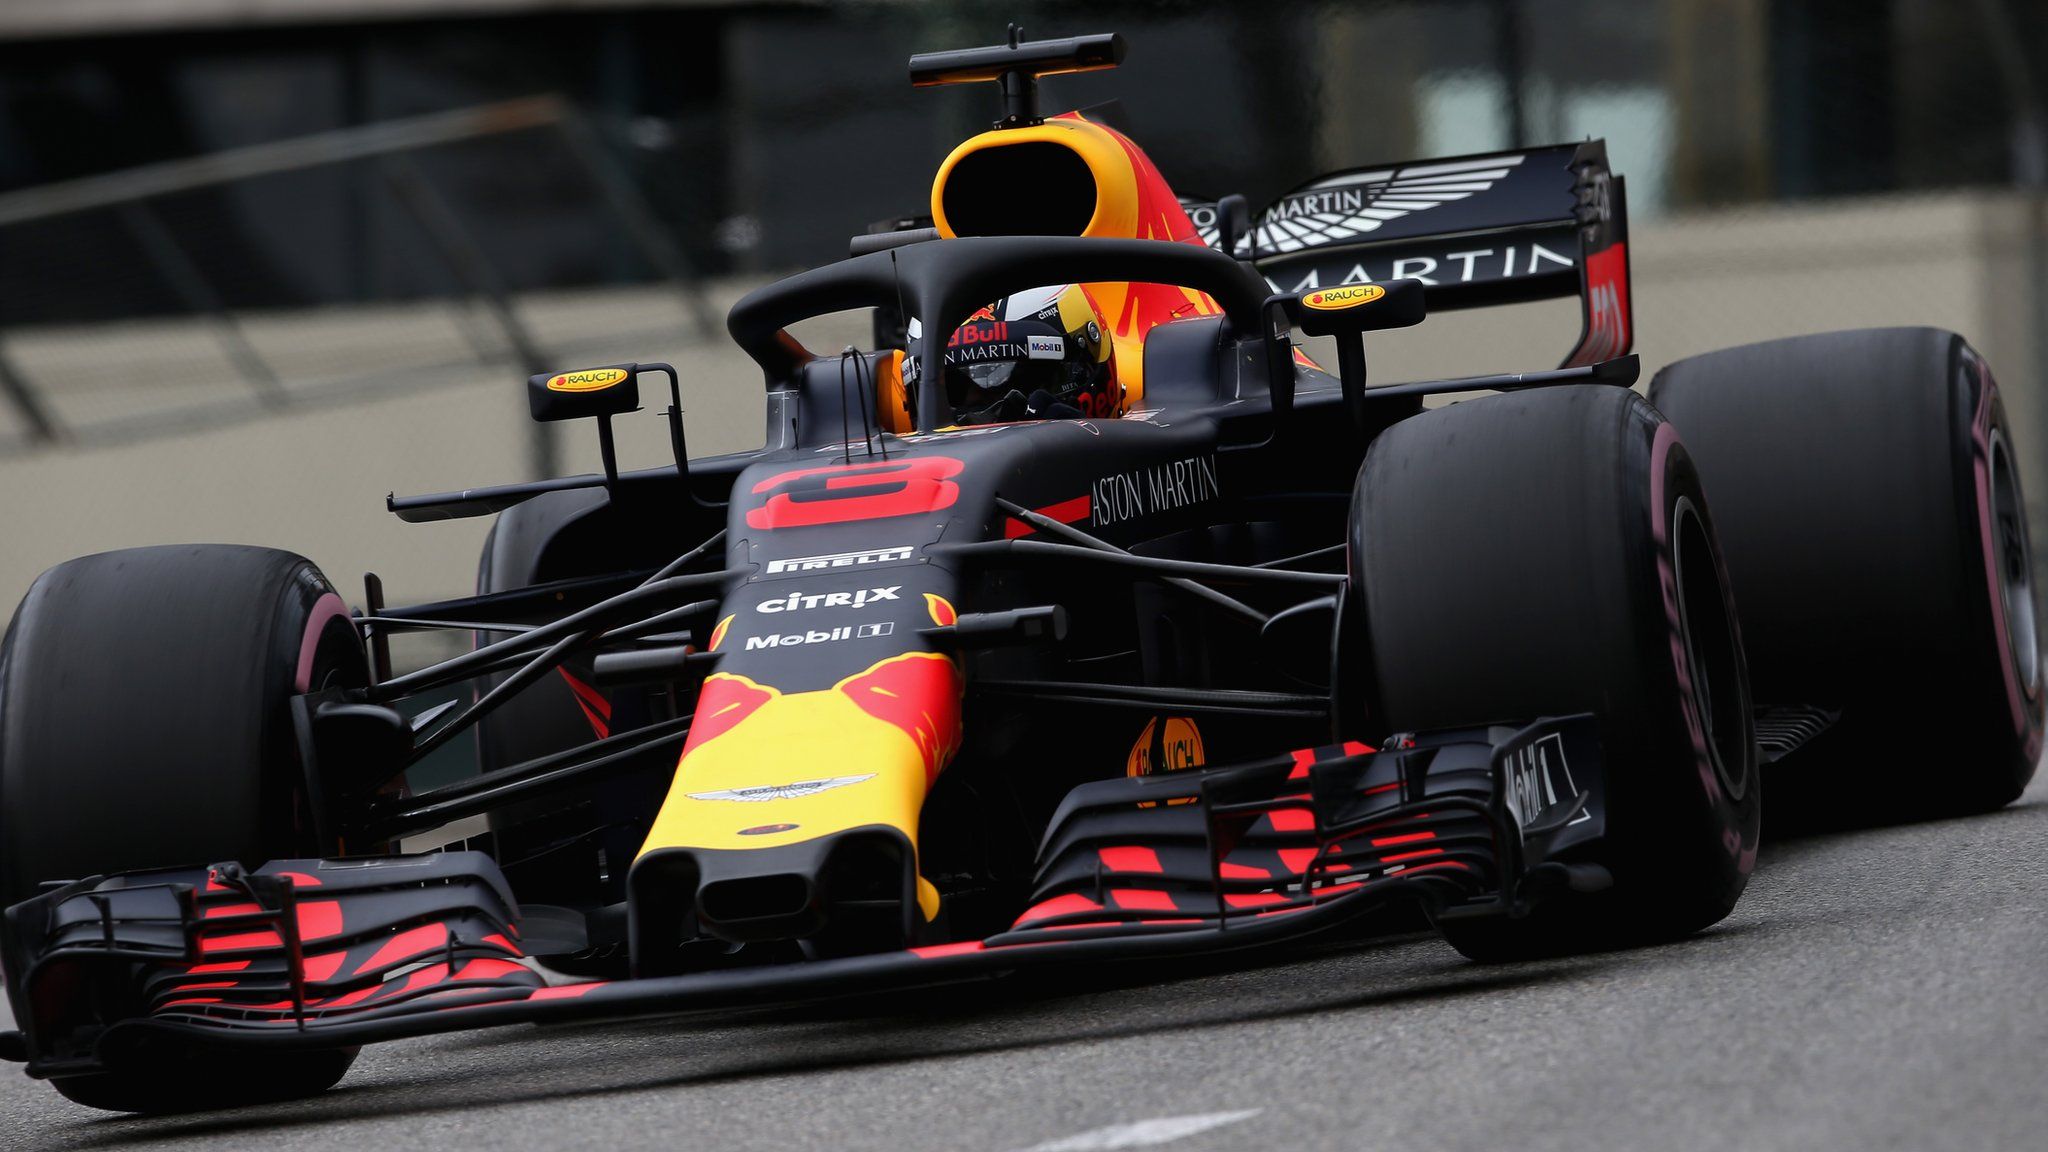 Daniel Ricciardo in action at the Monco Grand Prix